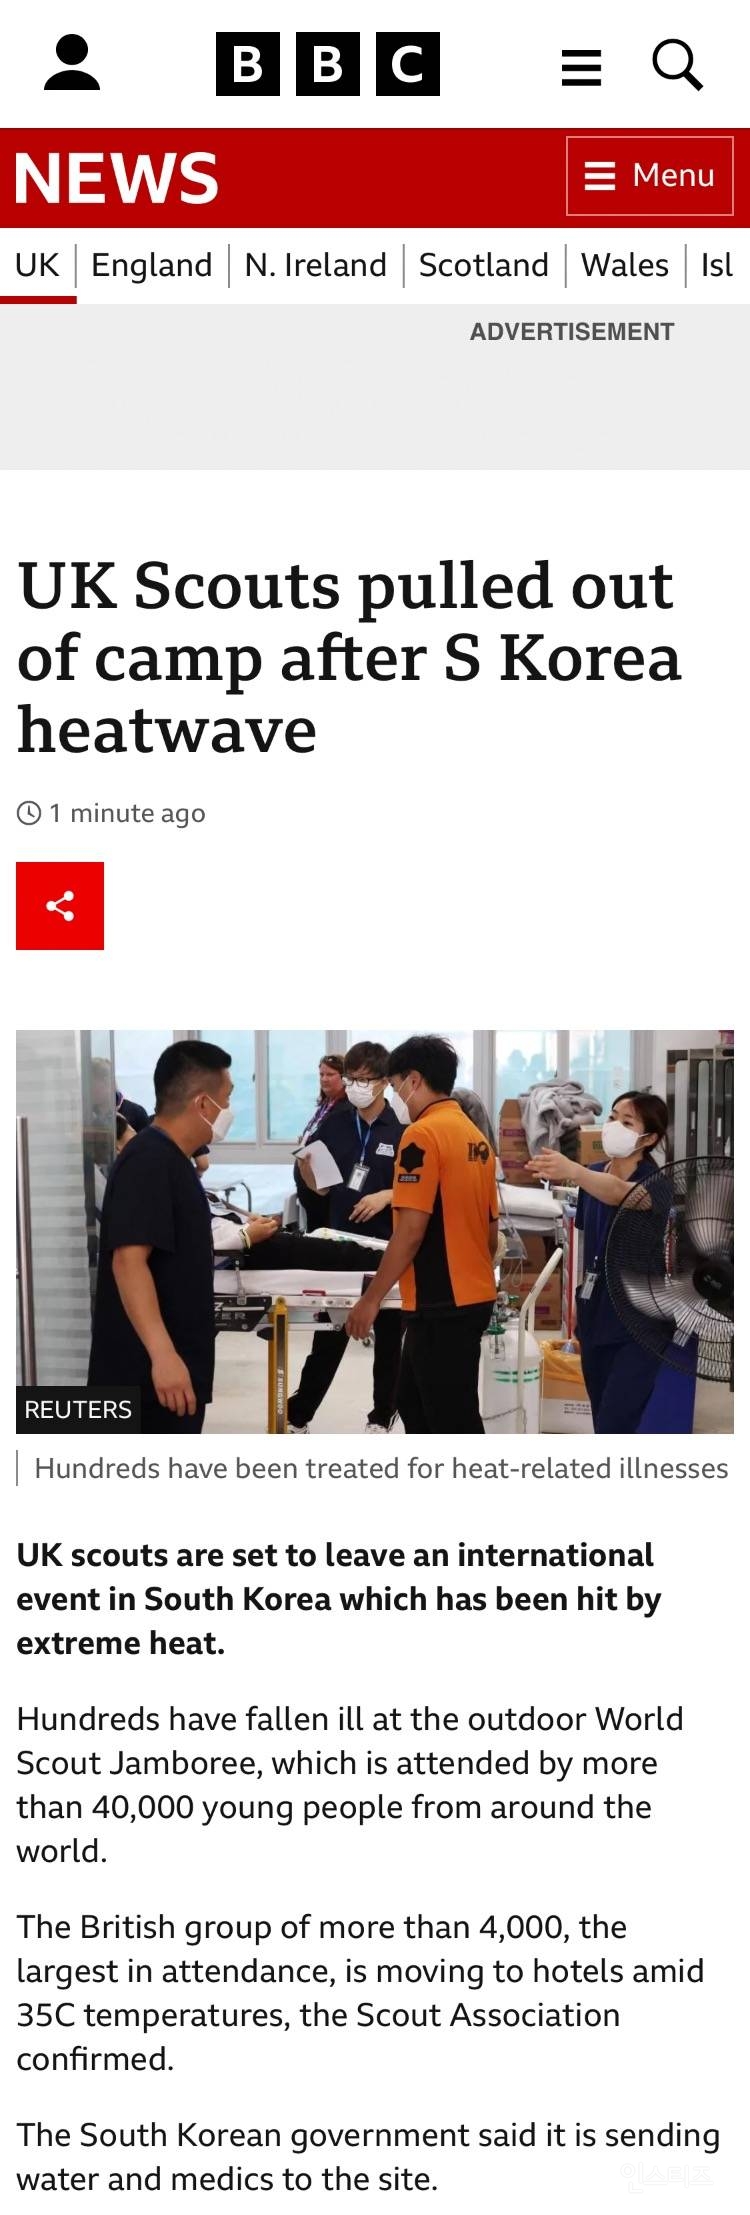 BBC 속보) 영국스카우트 한국 폭염으로 캠프에서 철수 | 인스티즈